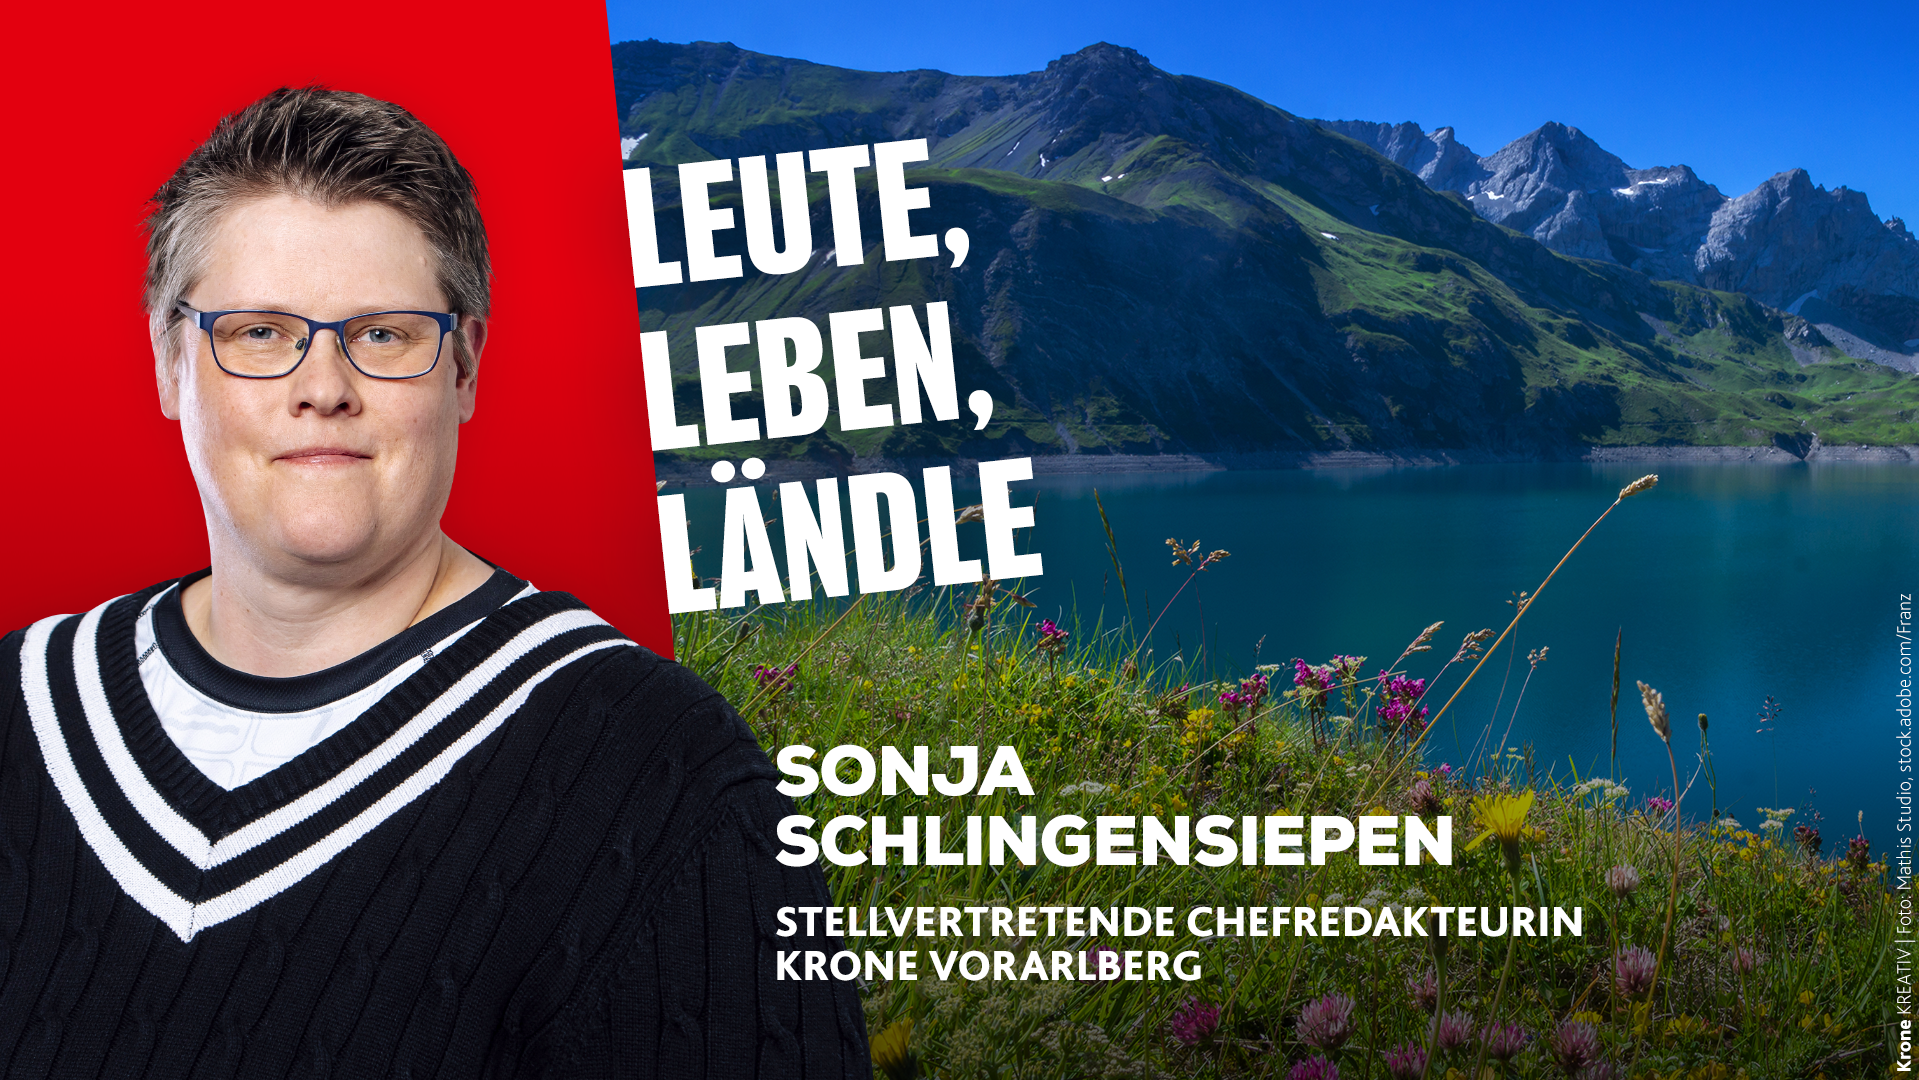 Sonja Schlingensiepen berichtet, was es Neues in Vorarlberg gibt. (Bild: Krone Kreativ/Mathis Studio)